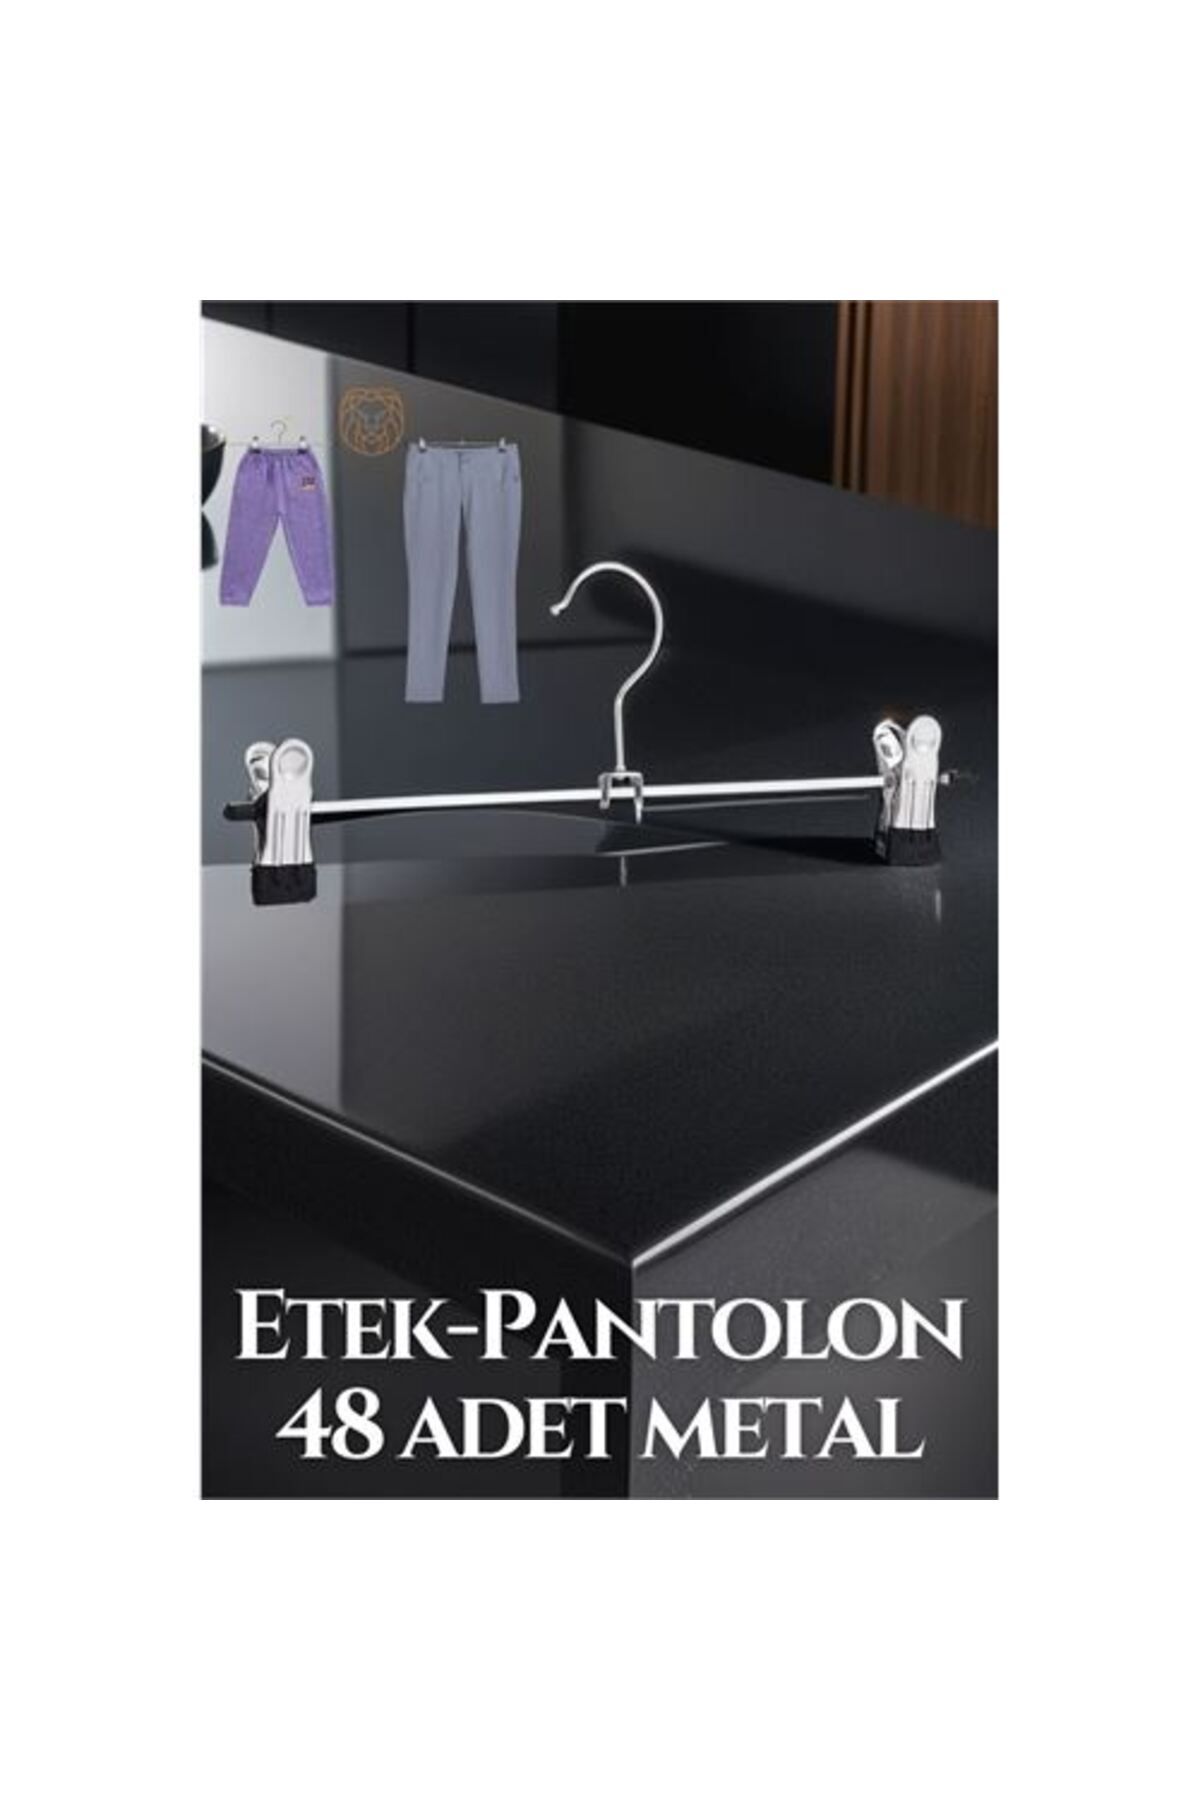 Transformacion 48 ADET Metal Etek Pantolon Eşarp Kıskaçlı Askı